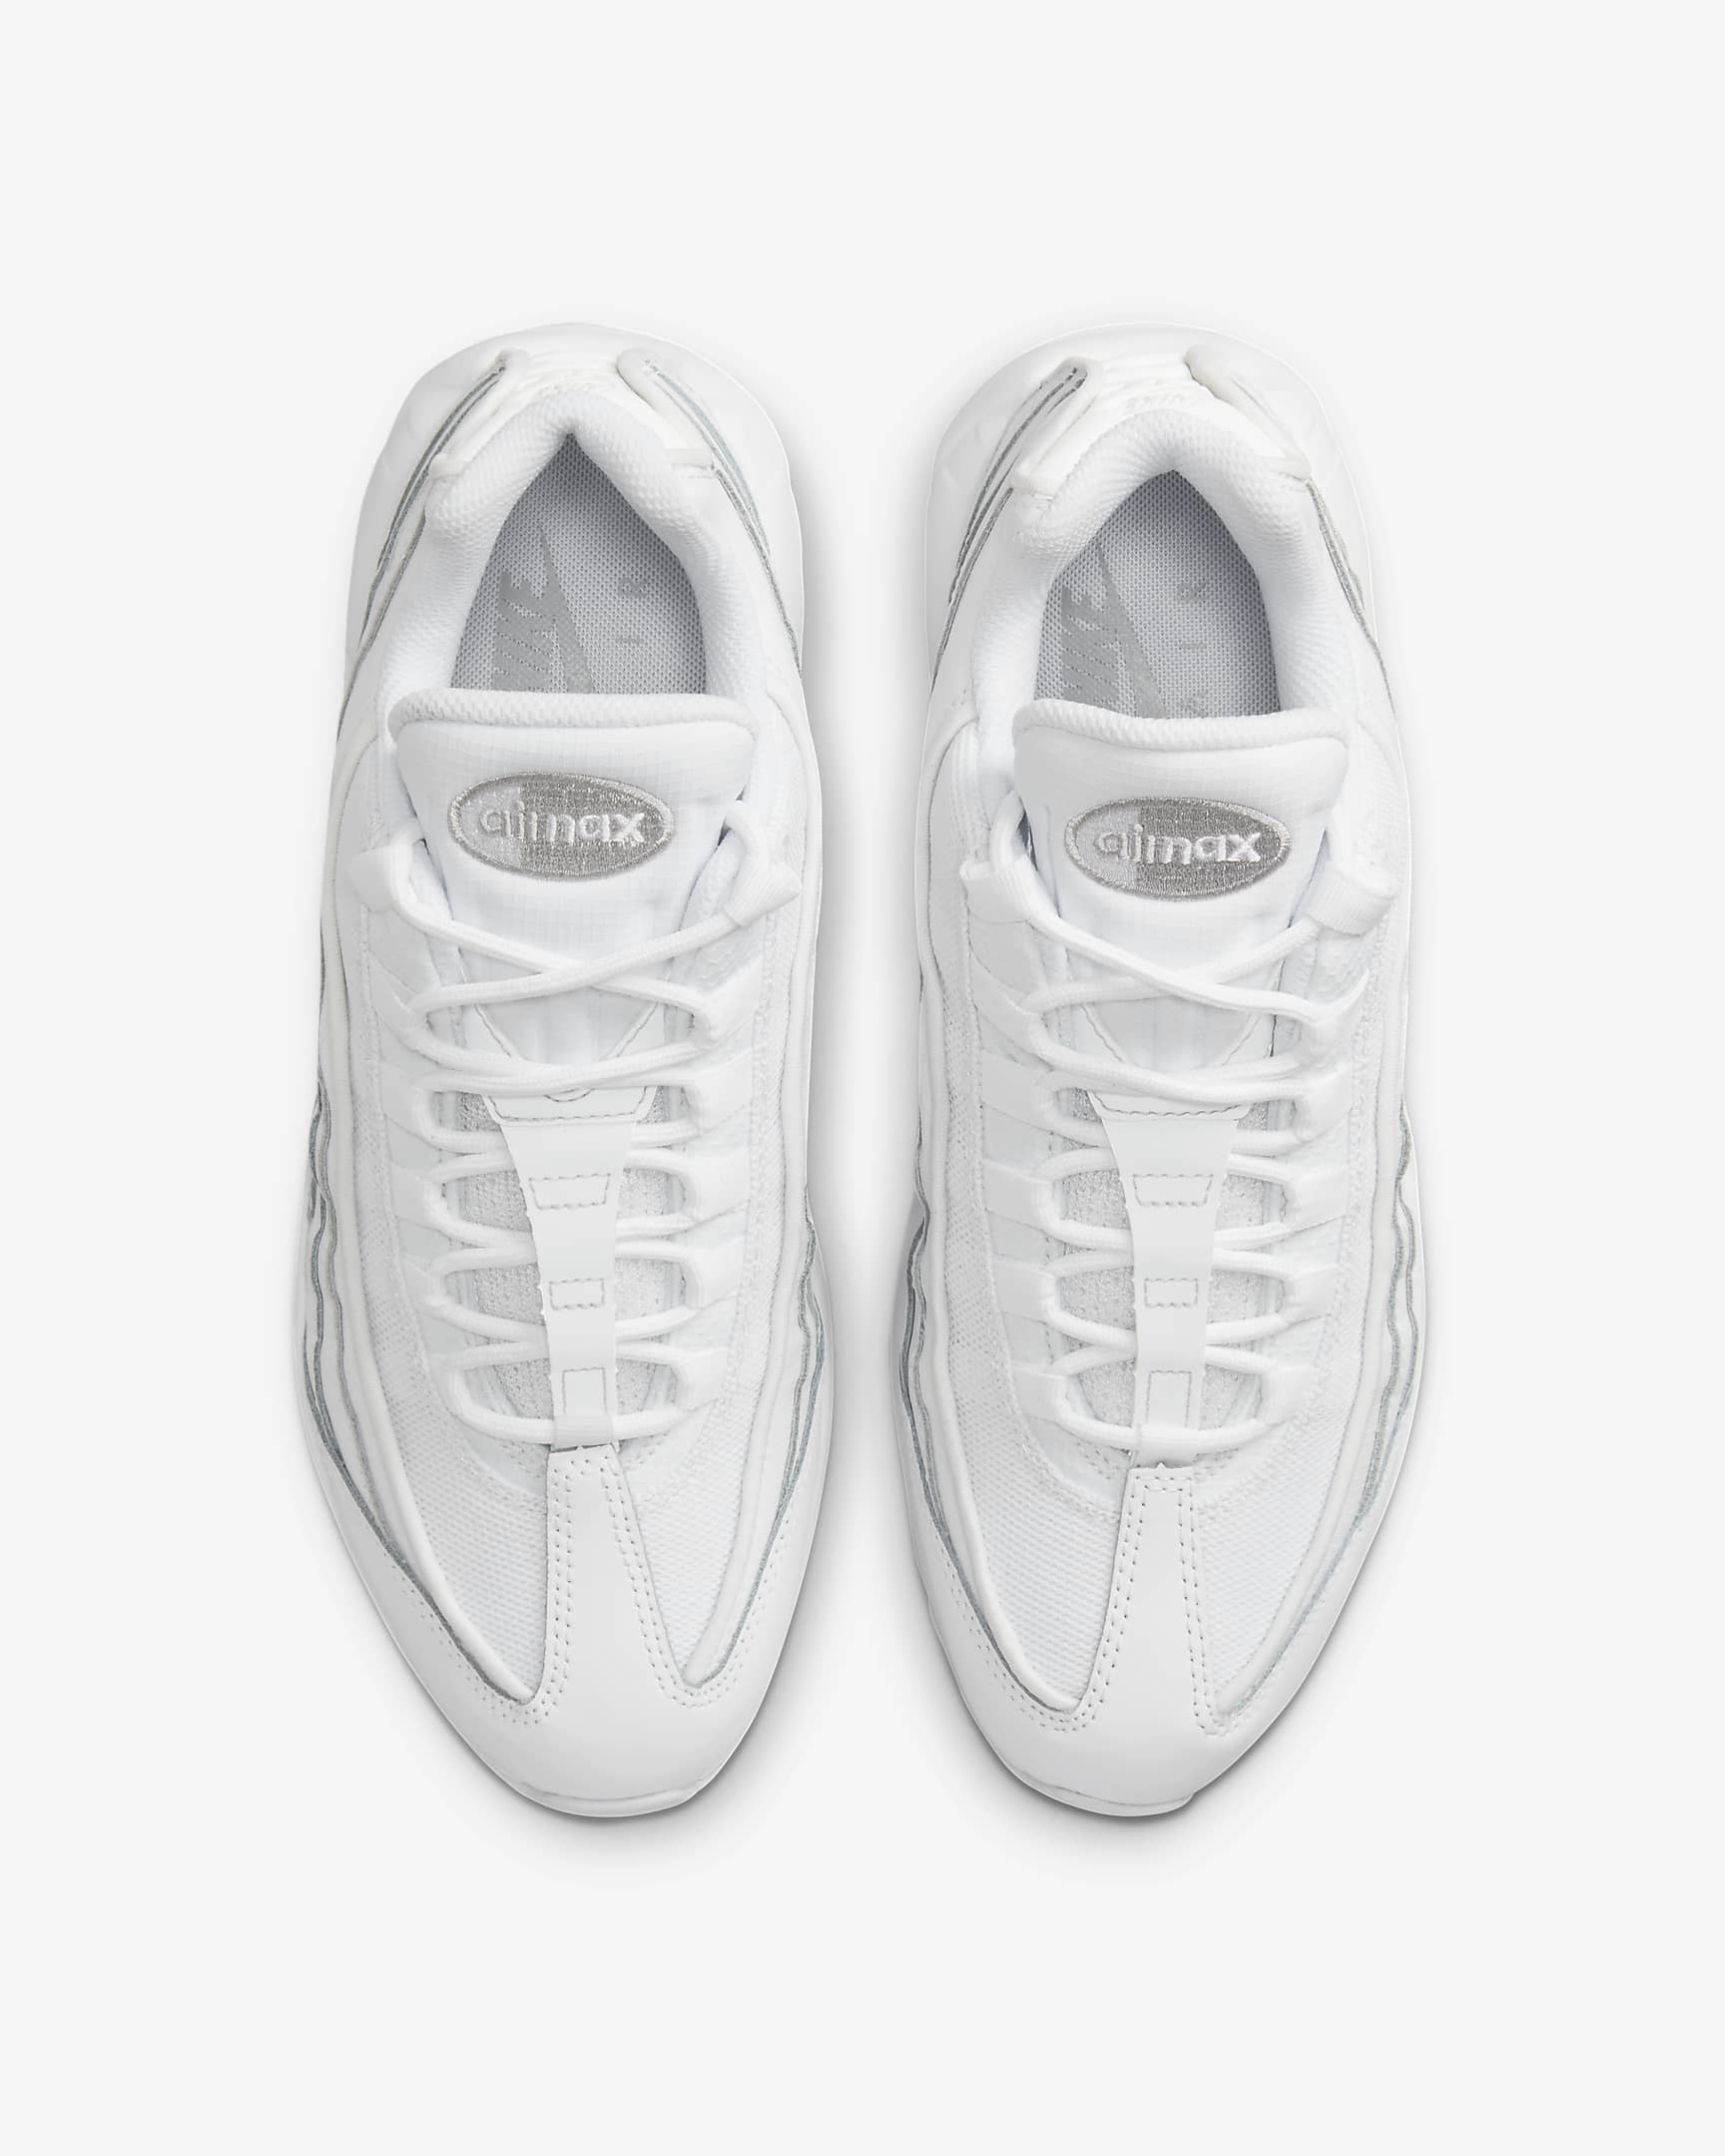 Chaussure Nike Air Max 95 Essential pour Homme - Blanc/Grey Fog/Blanc